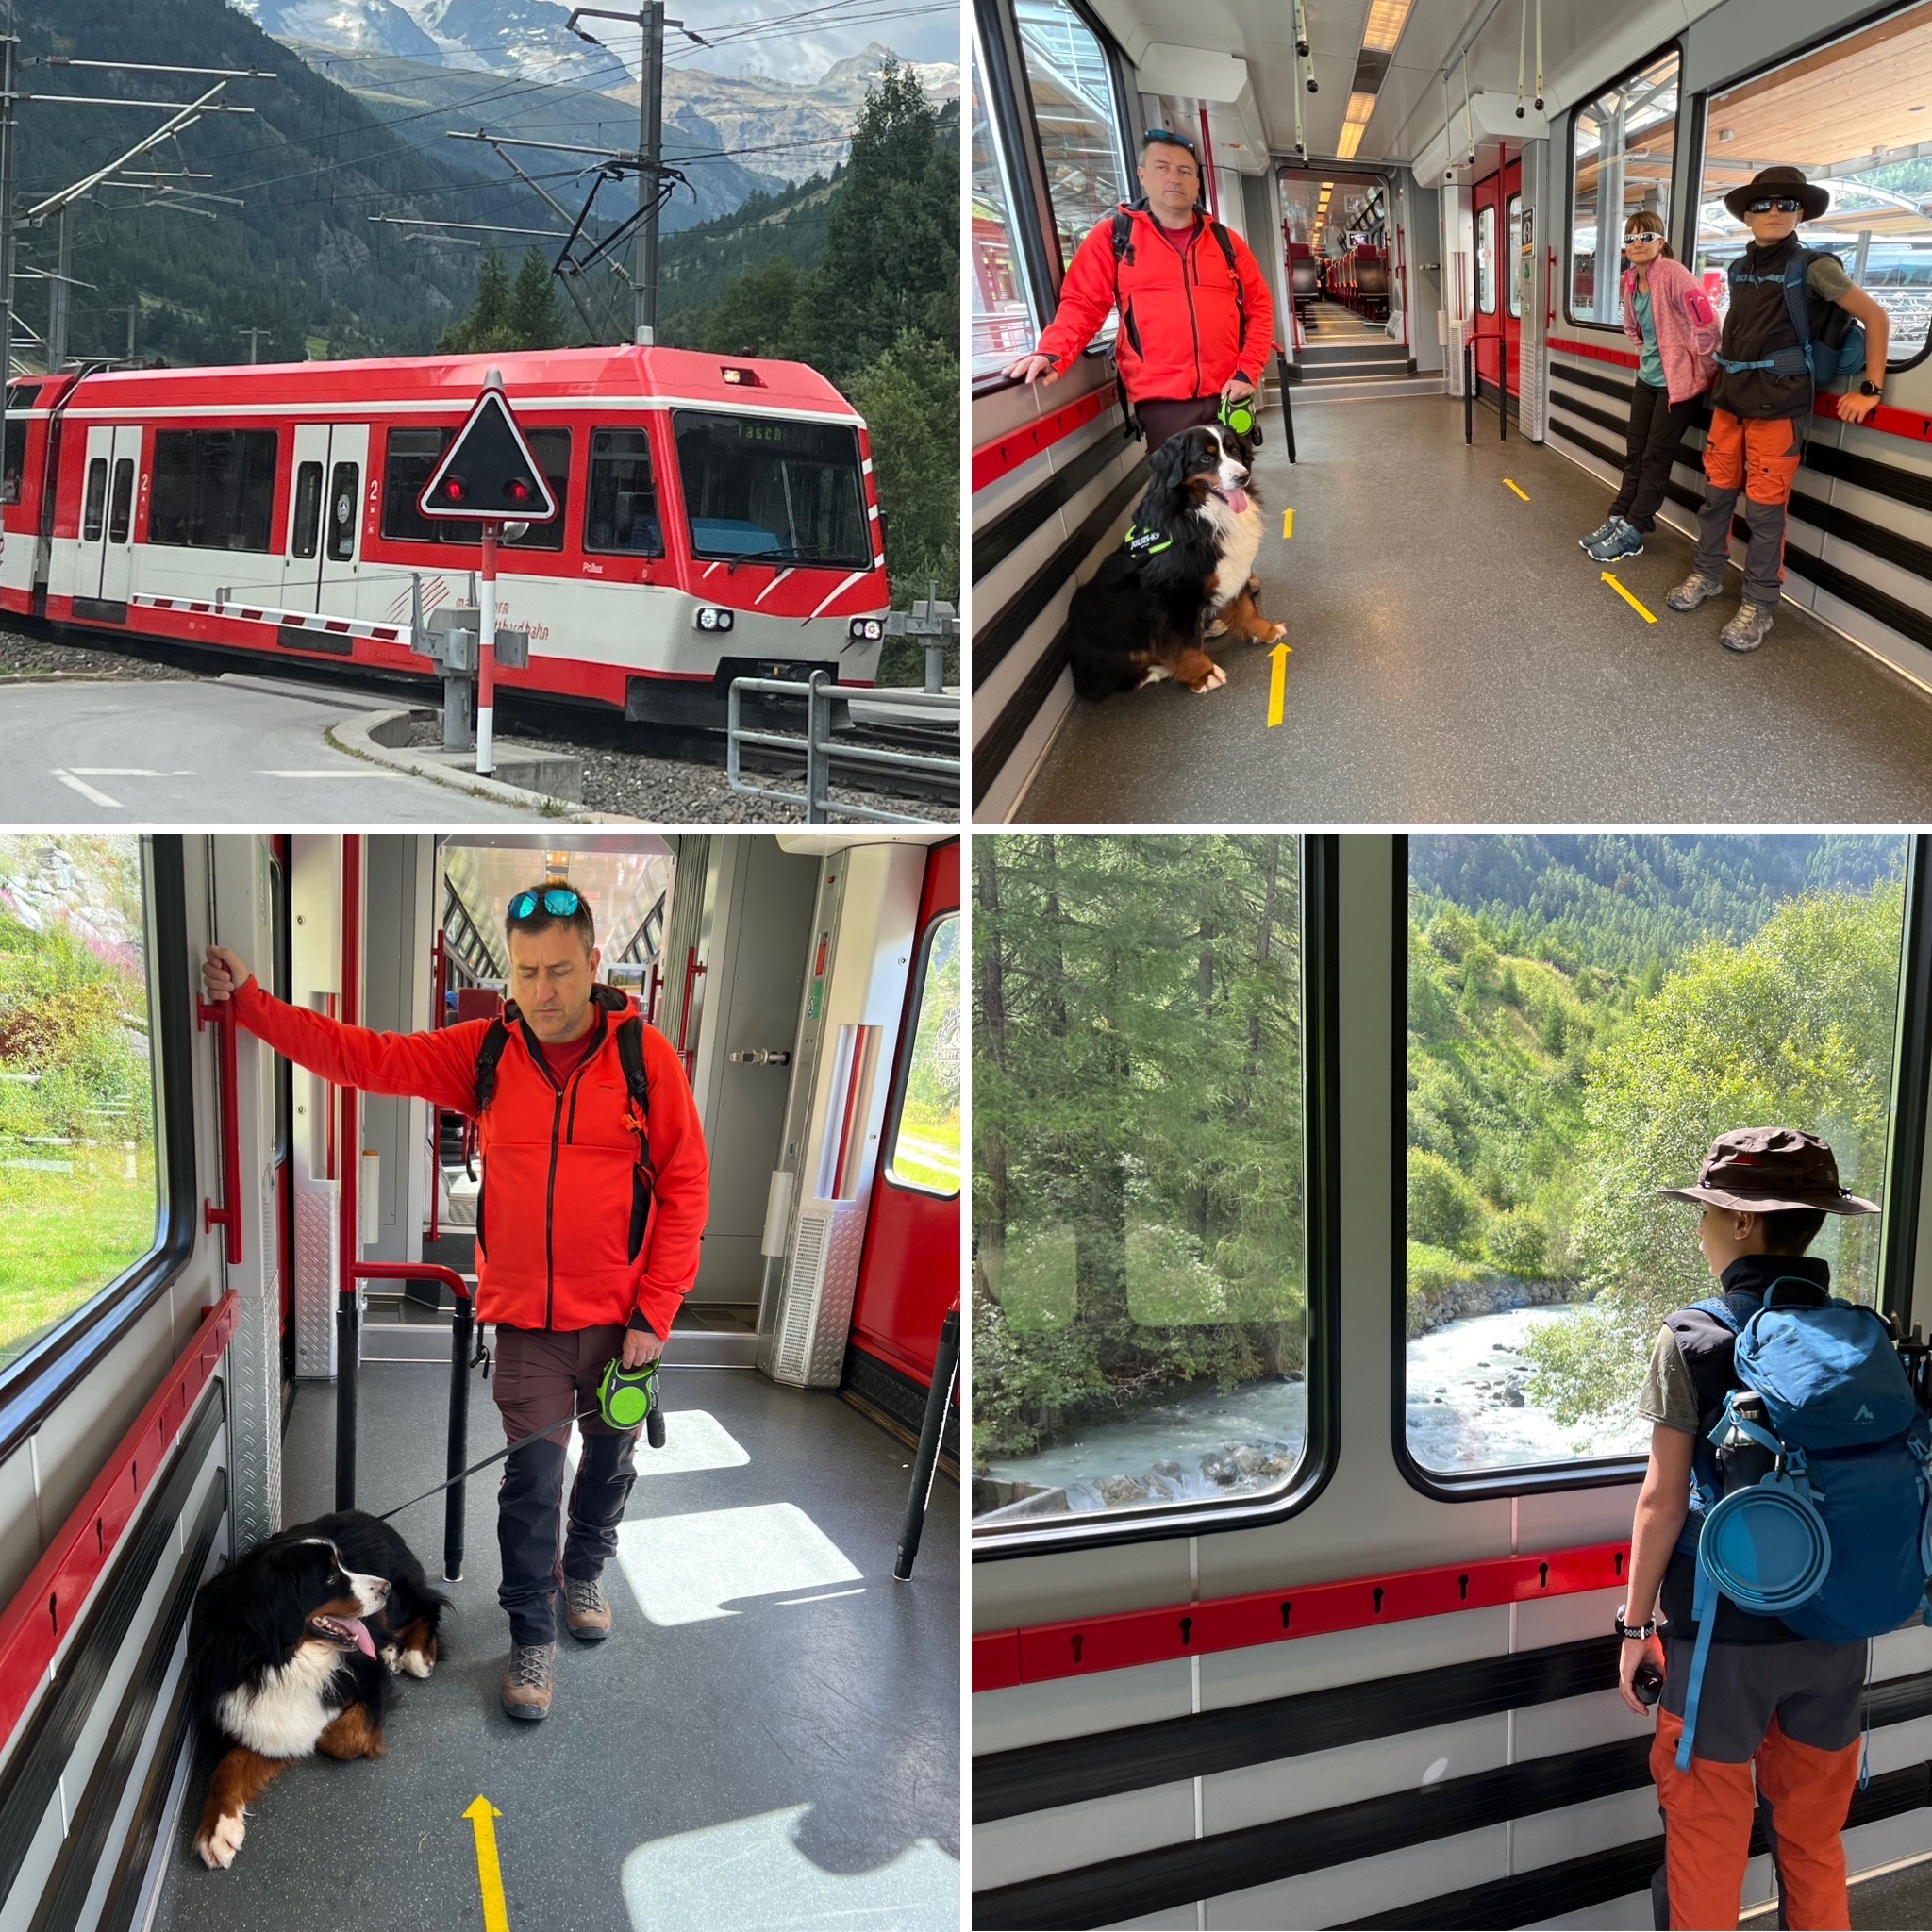 Autoenfamilia Tren Zermatt